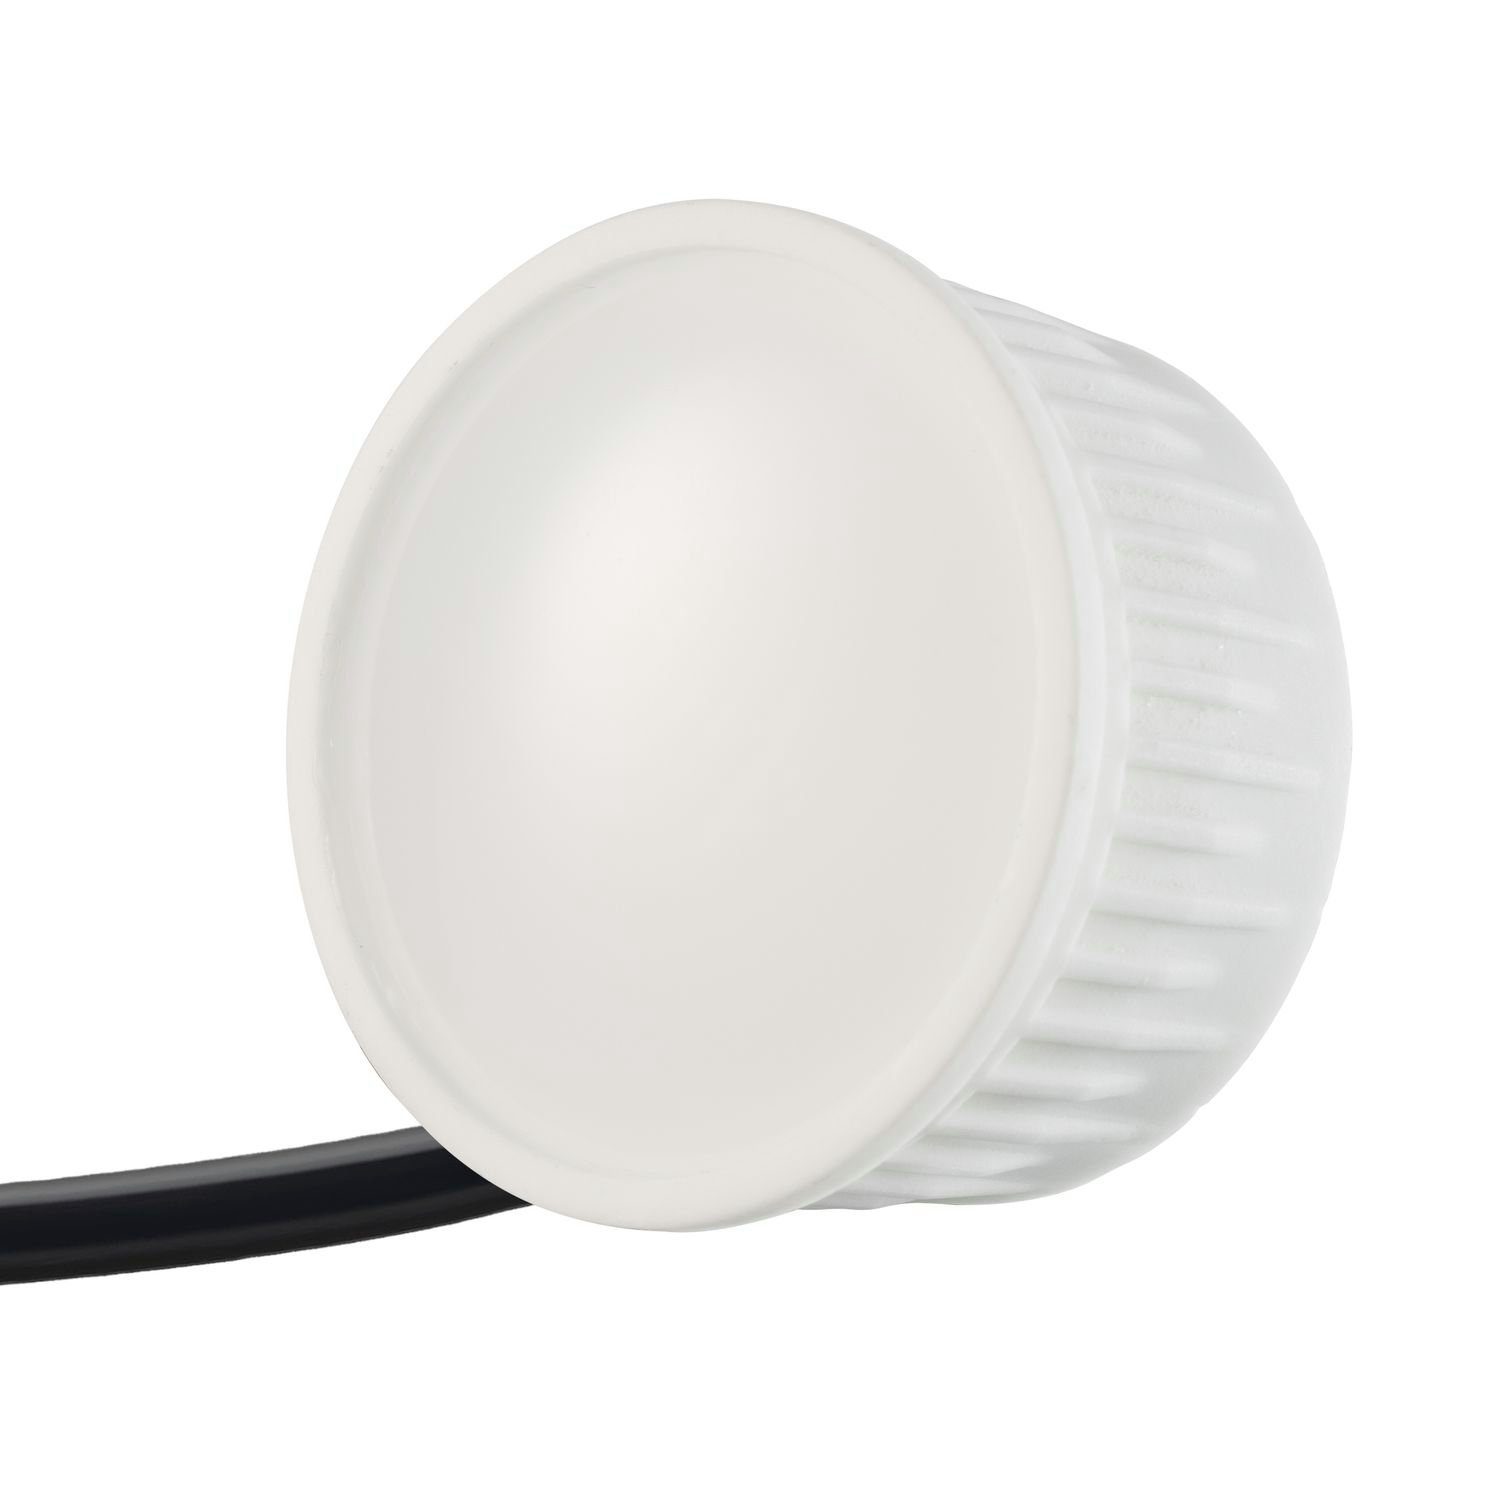 LEDANDO LED Einbaustrahler 10er silber in Einbaustrahler gebürste Set LED edelstahl flach / extra